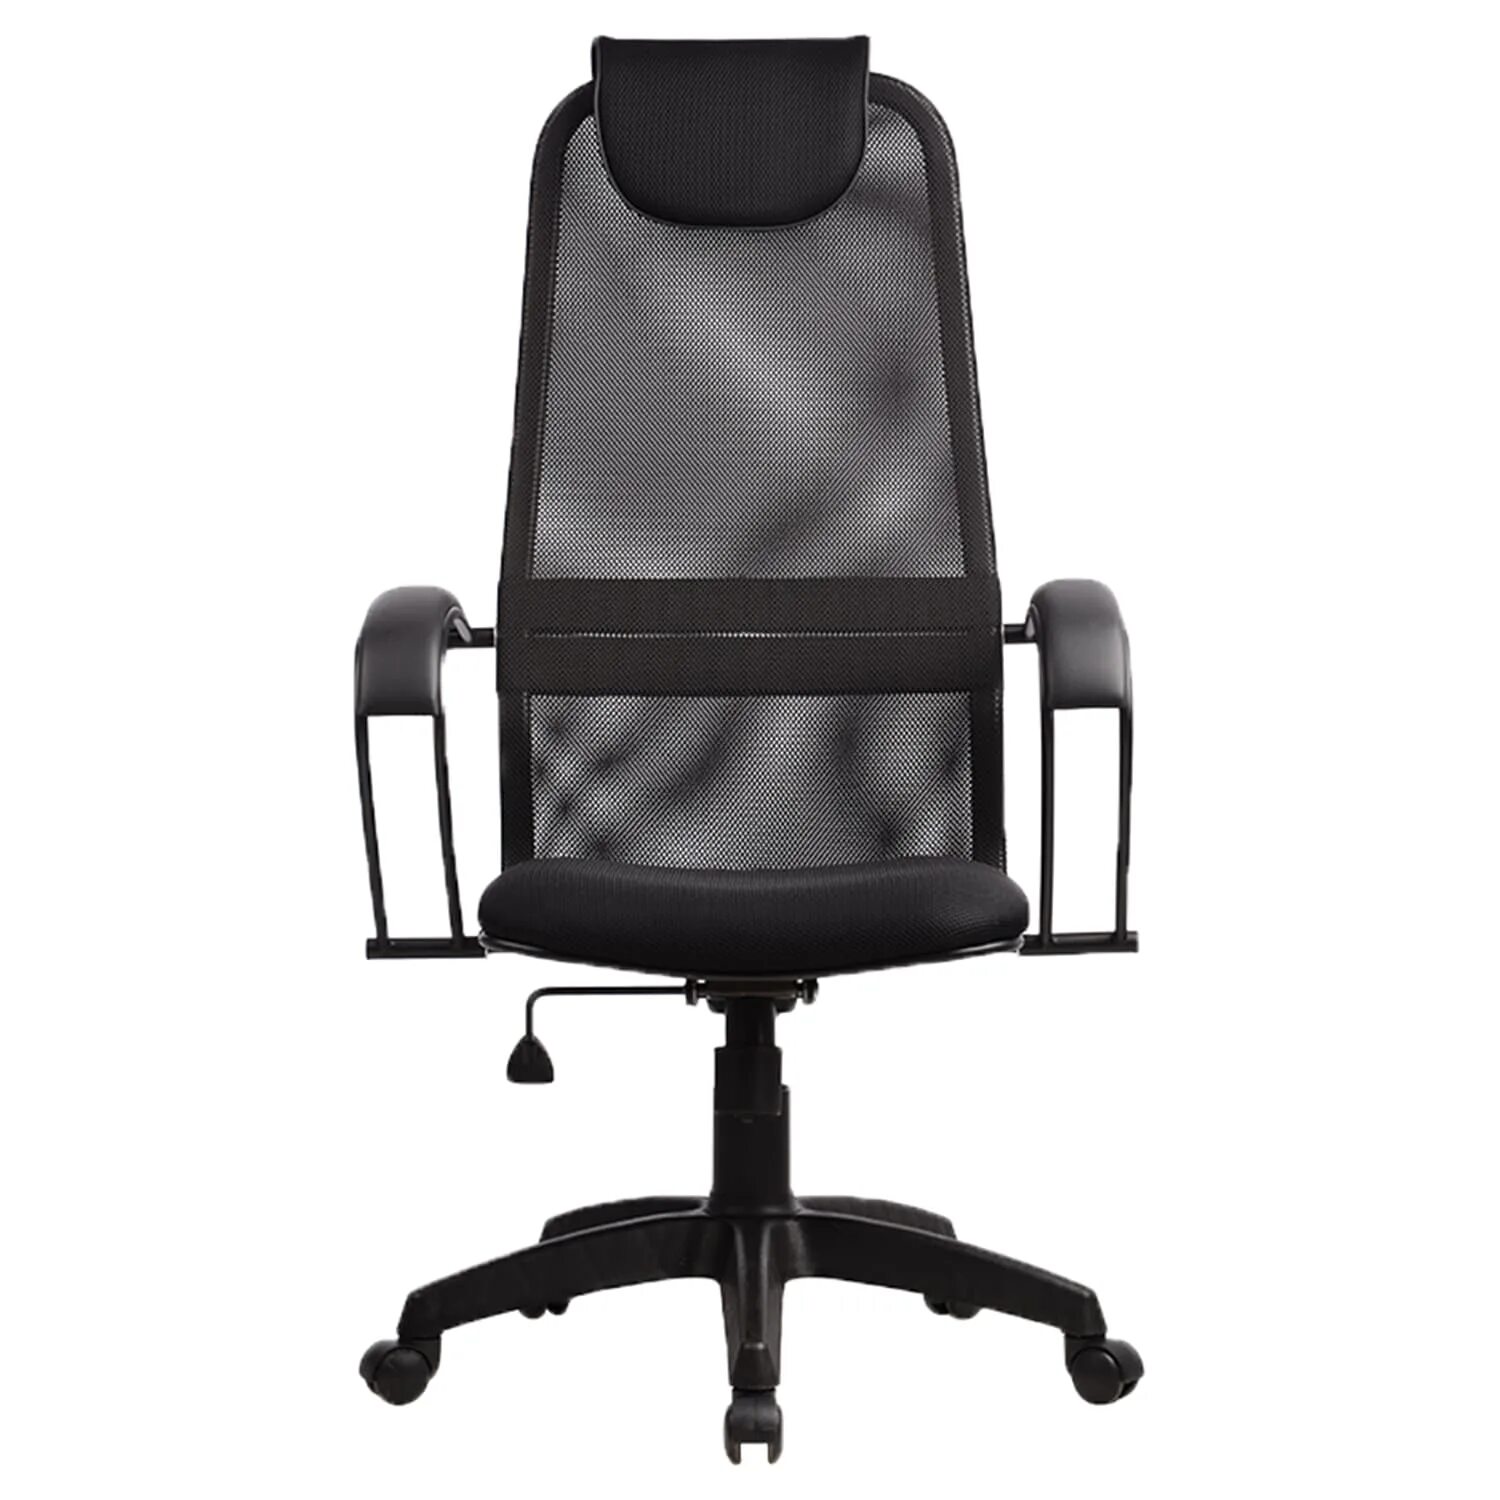 Офисное кресло сиденье сетка. Кресло Метта BP-8 pl. Офисное кресло Метта BP-8pl. Кресло Метта s-ВР-8. Кресло Метта ВР-8 pl.